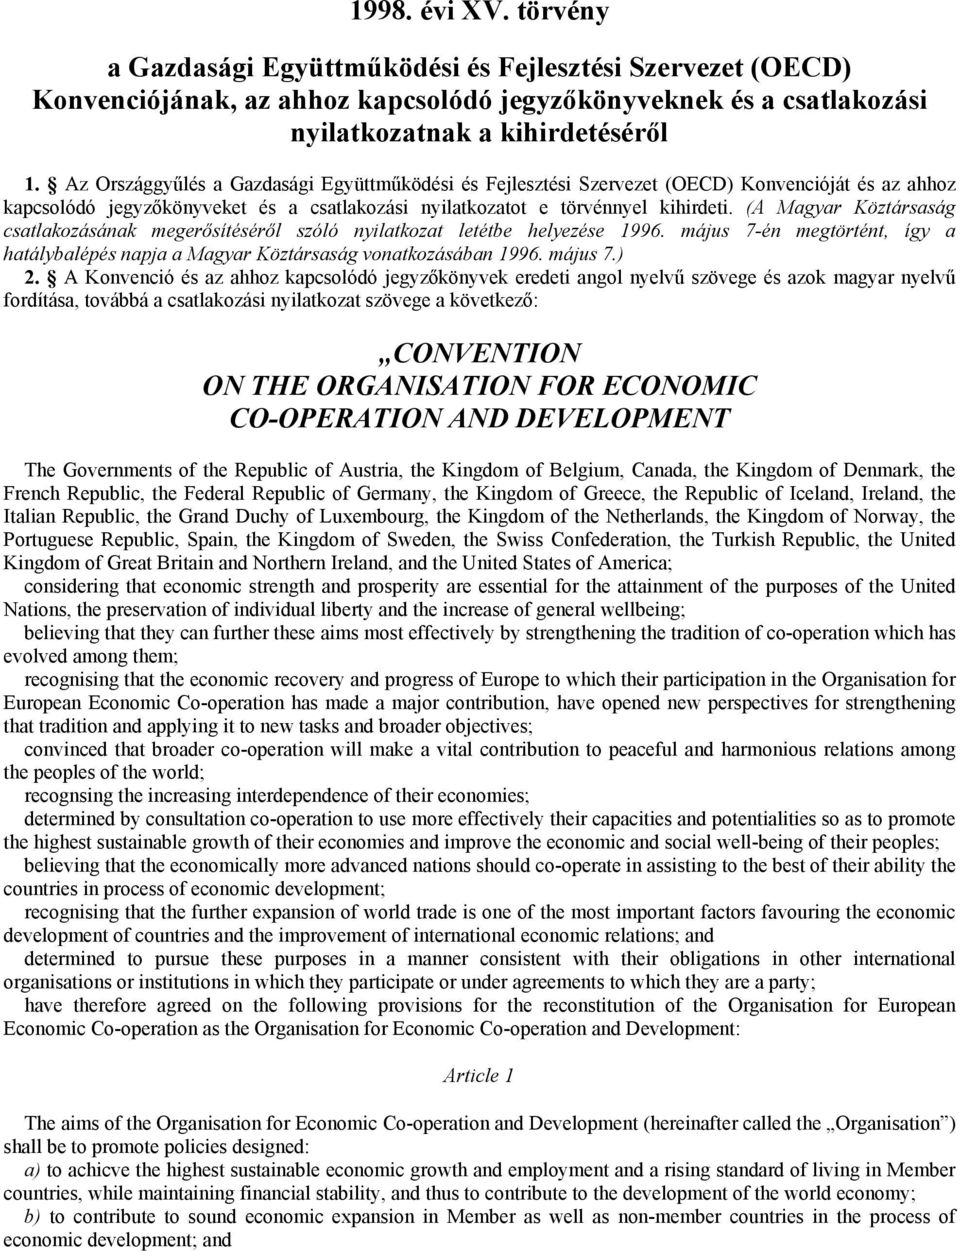 (A Magyar Köztársaság csatlakozásának megerősítéséről szóló nyilatkozat letétbe helyezése 1996. május 7-én megtörtént, így a hatálybalépés napja a Magyar Köztársaság vonatkozásában 1996. május 7.) 2.